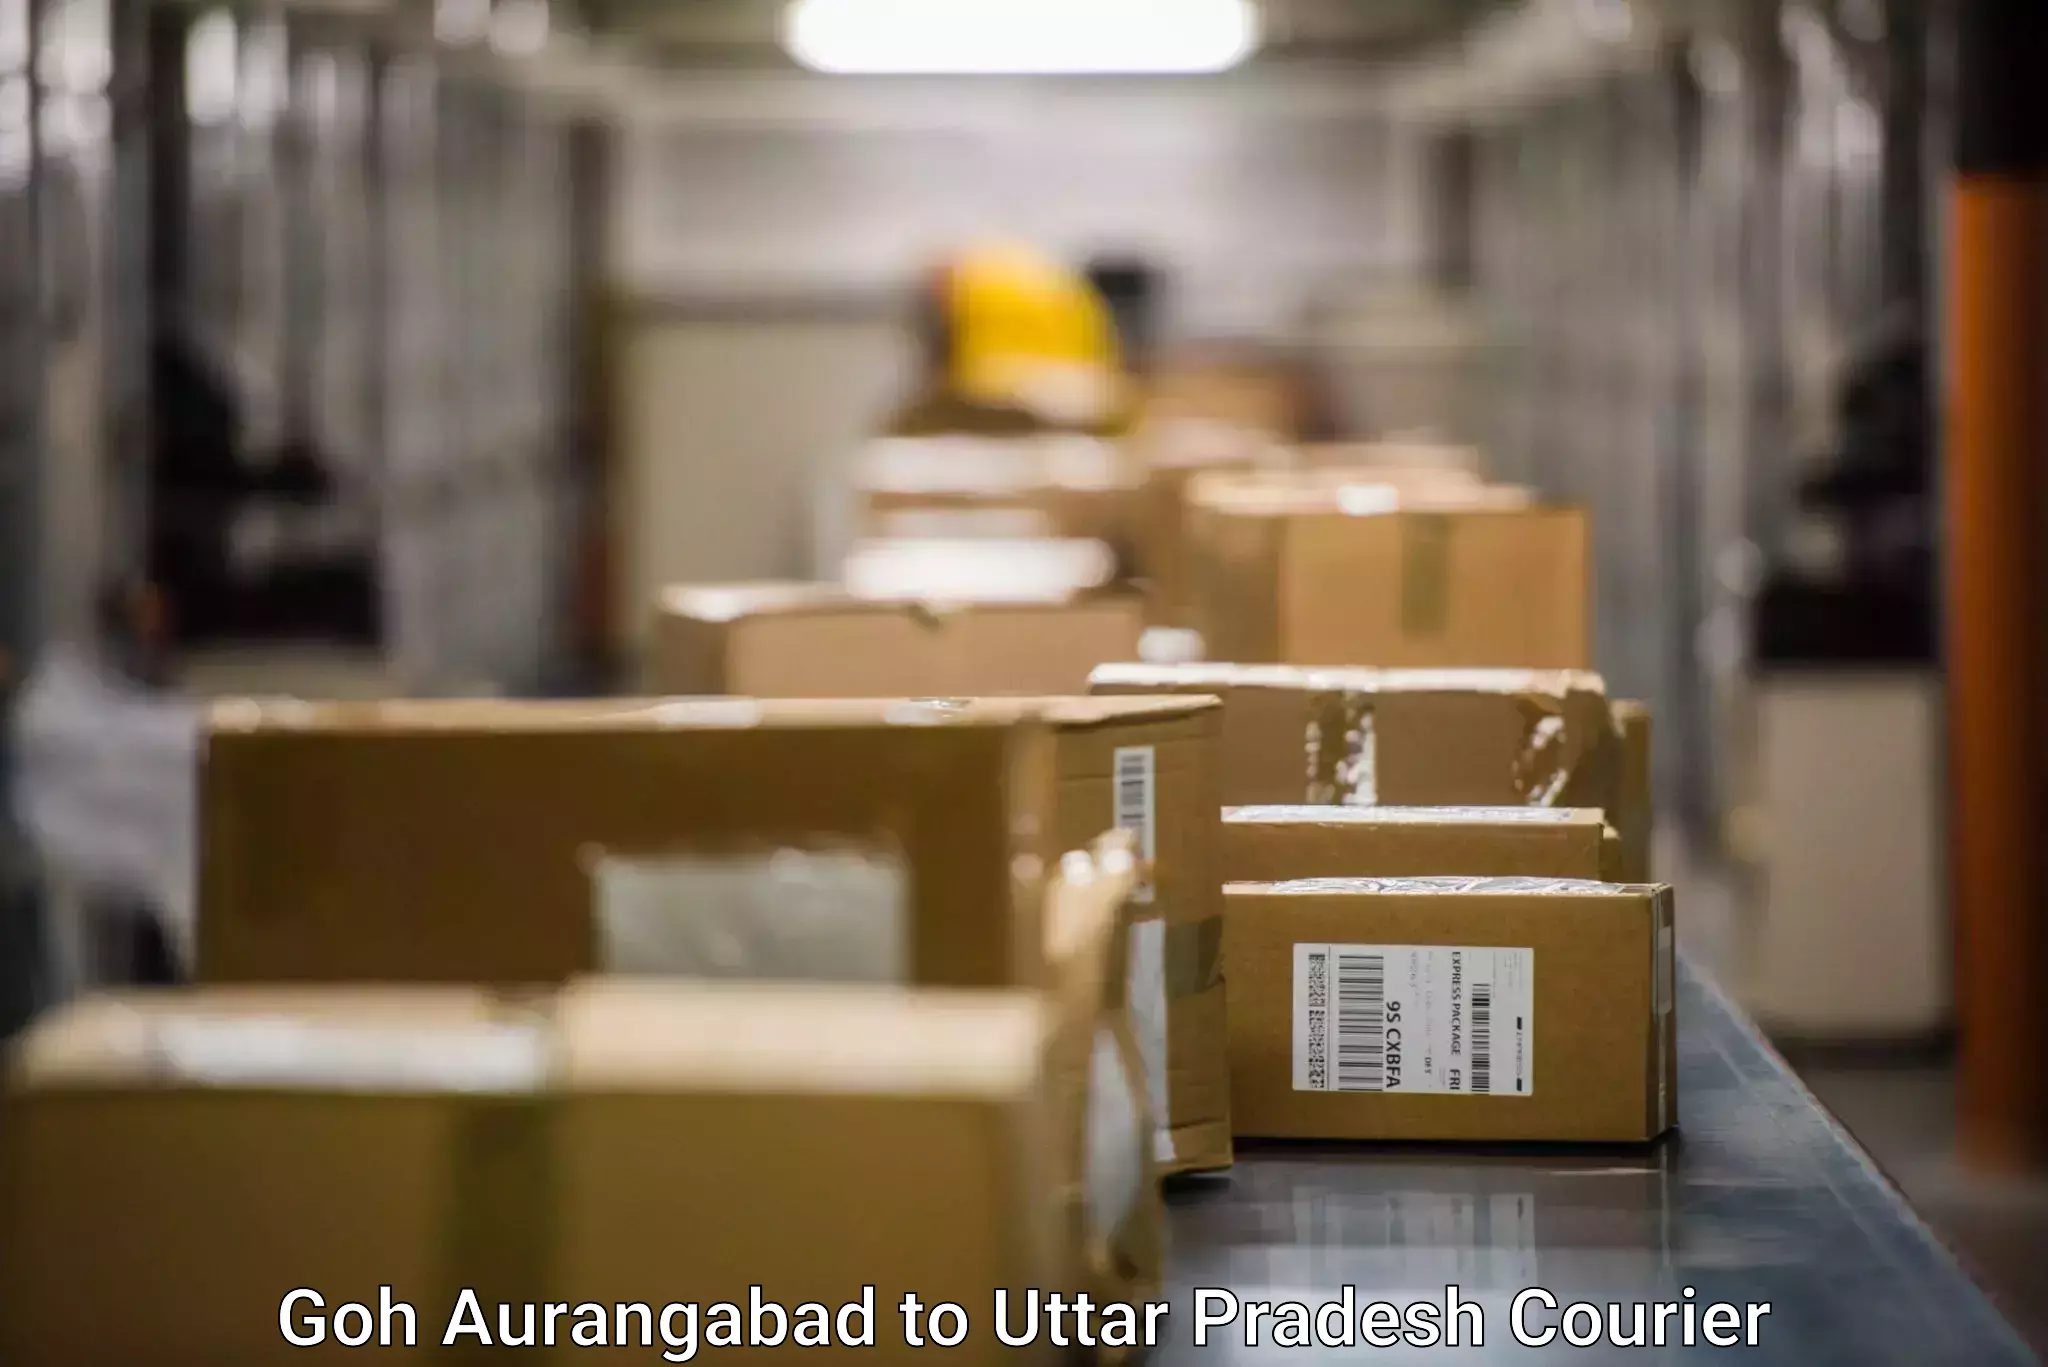 High-capacity parcel service Goh Aurangabad to Uttar Pradesh